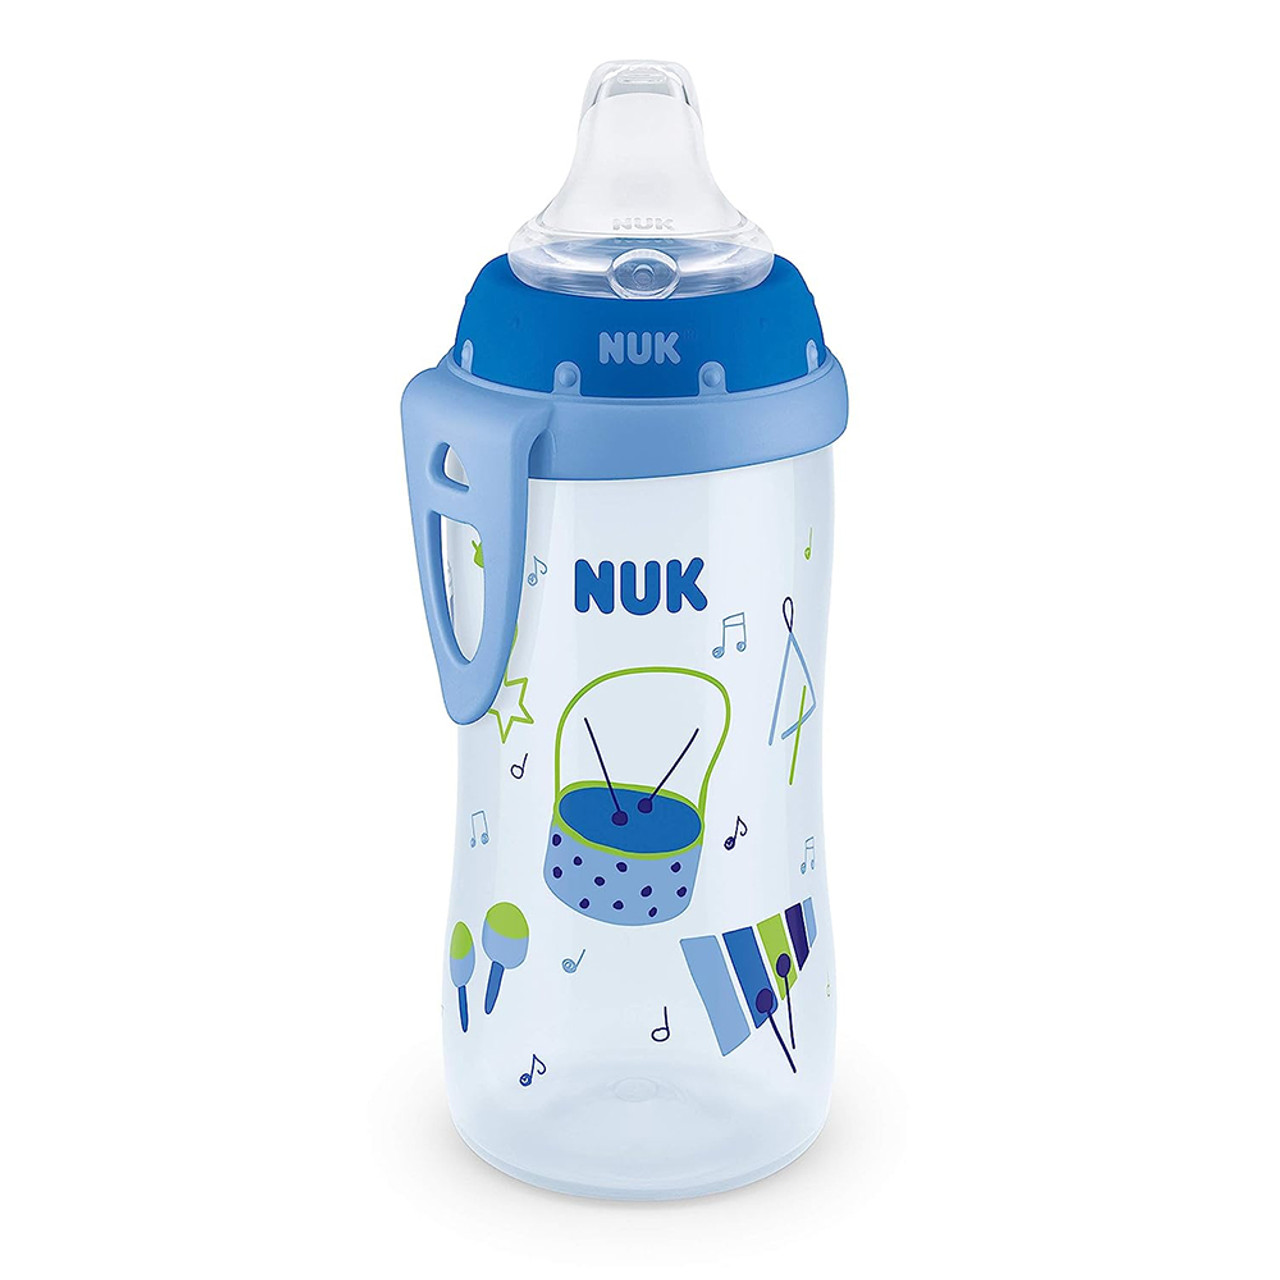 NUK Active Cup, 10 oz Soft Spout Sippy Cup, 12+ Months, 1 Pack